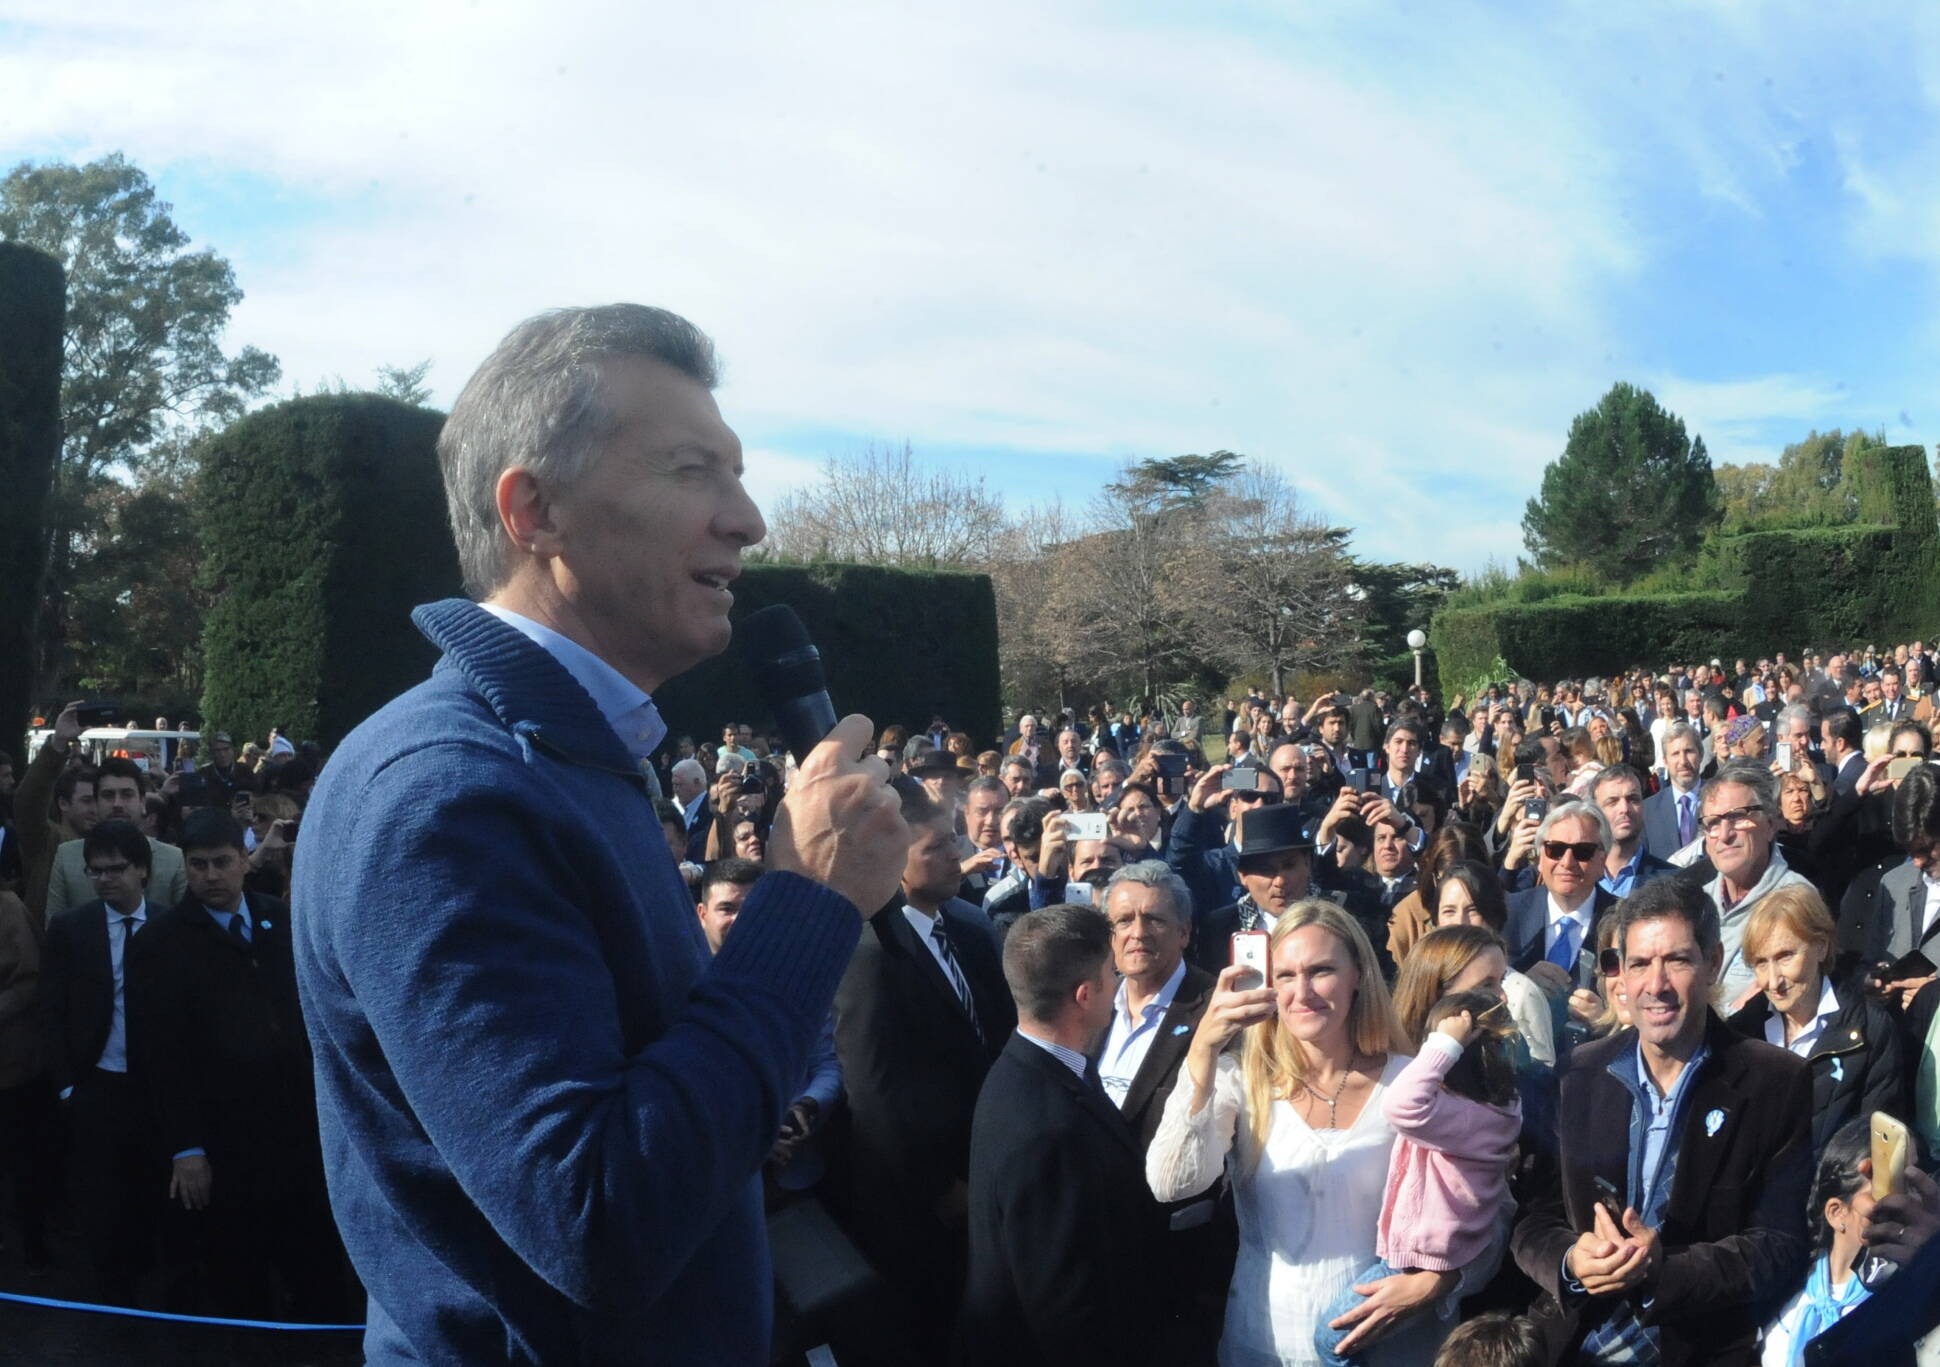 El presidente Macri invitó a las organizaciones sociales a reforzar el trabajo conjunto 